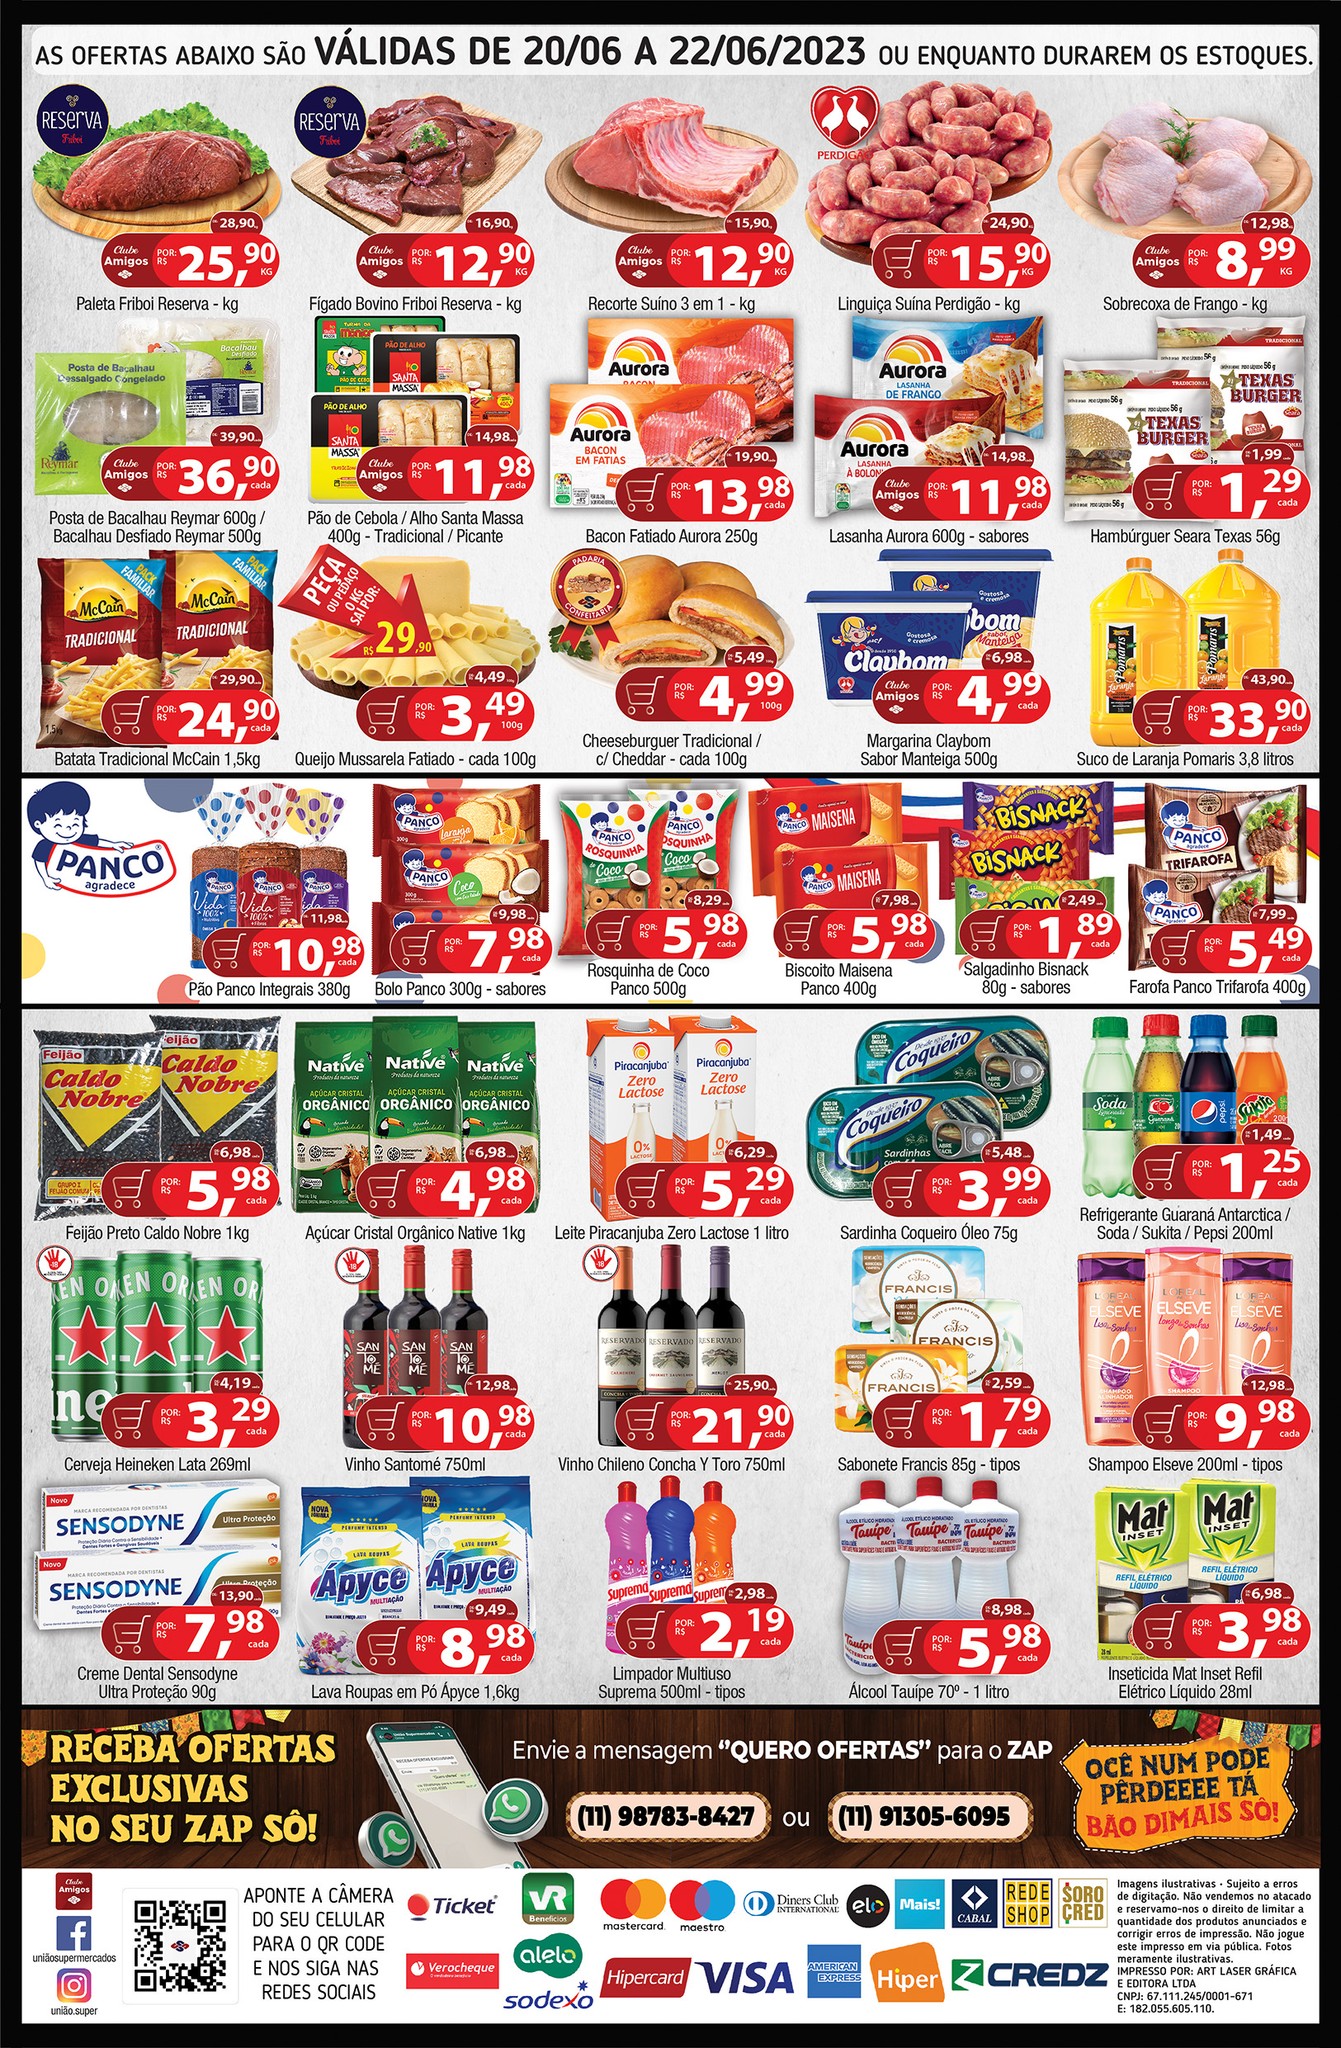 Quarta-feira de ofertas em carnes, hortifrúti, bebidas e mais 40 opções no União Supermercados